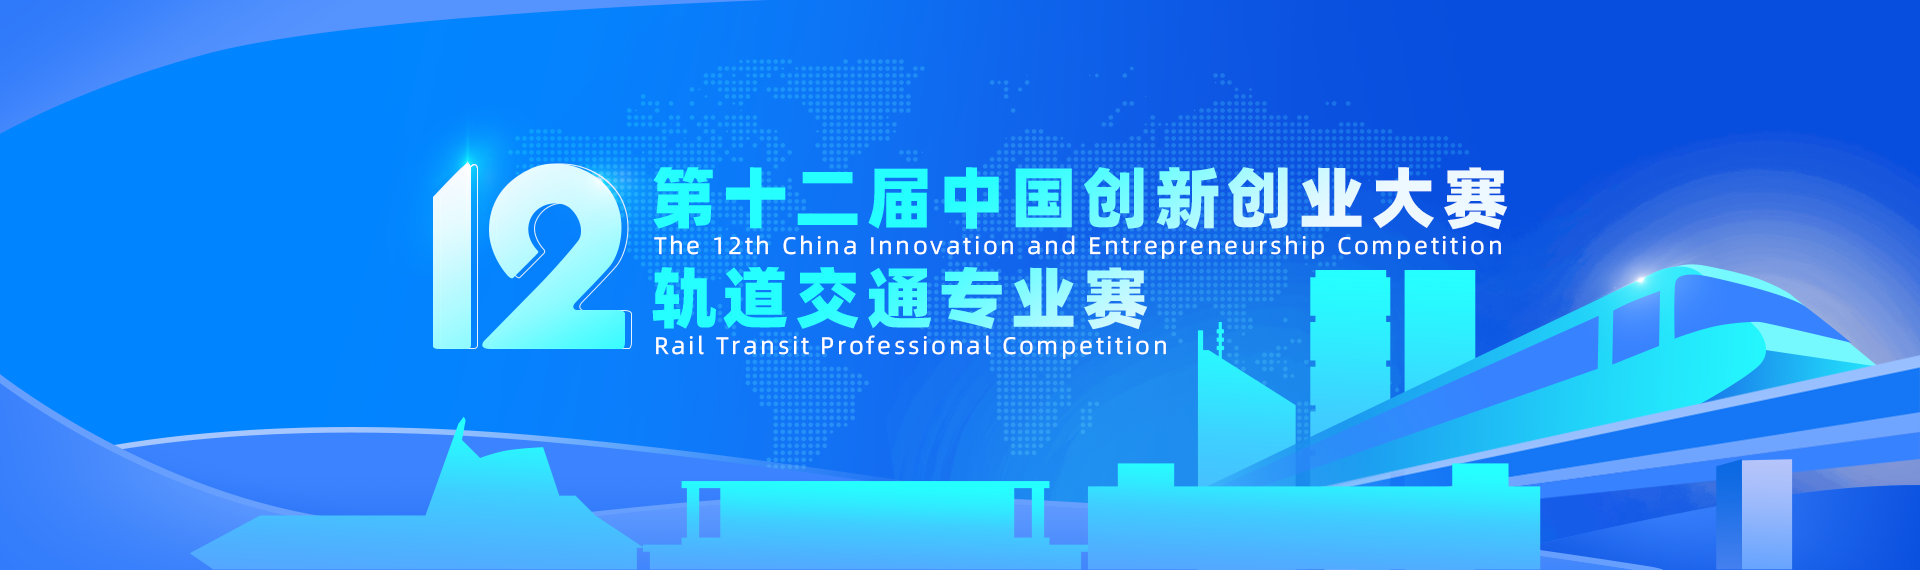 第十二届中国创新创业大赛轨道交通专业赛